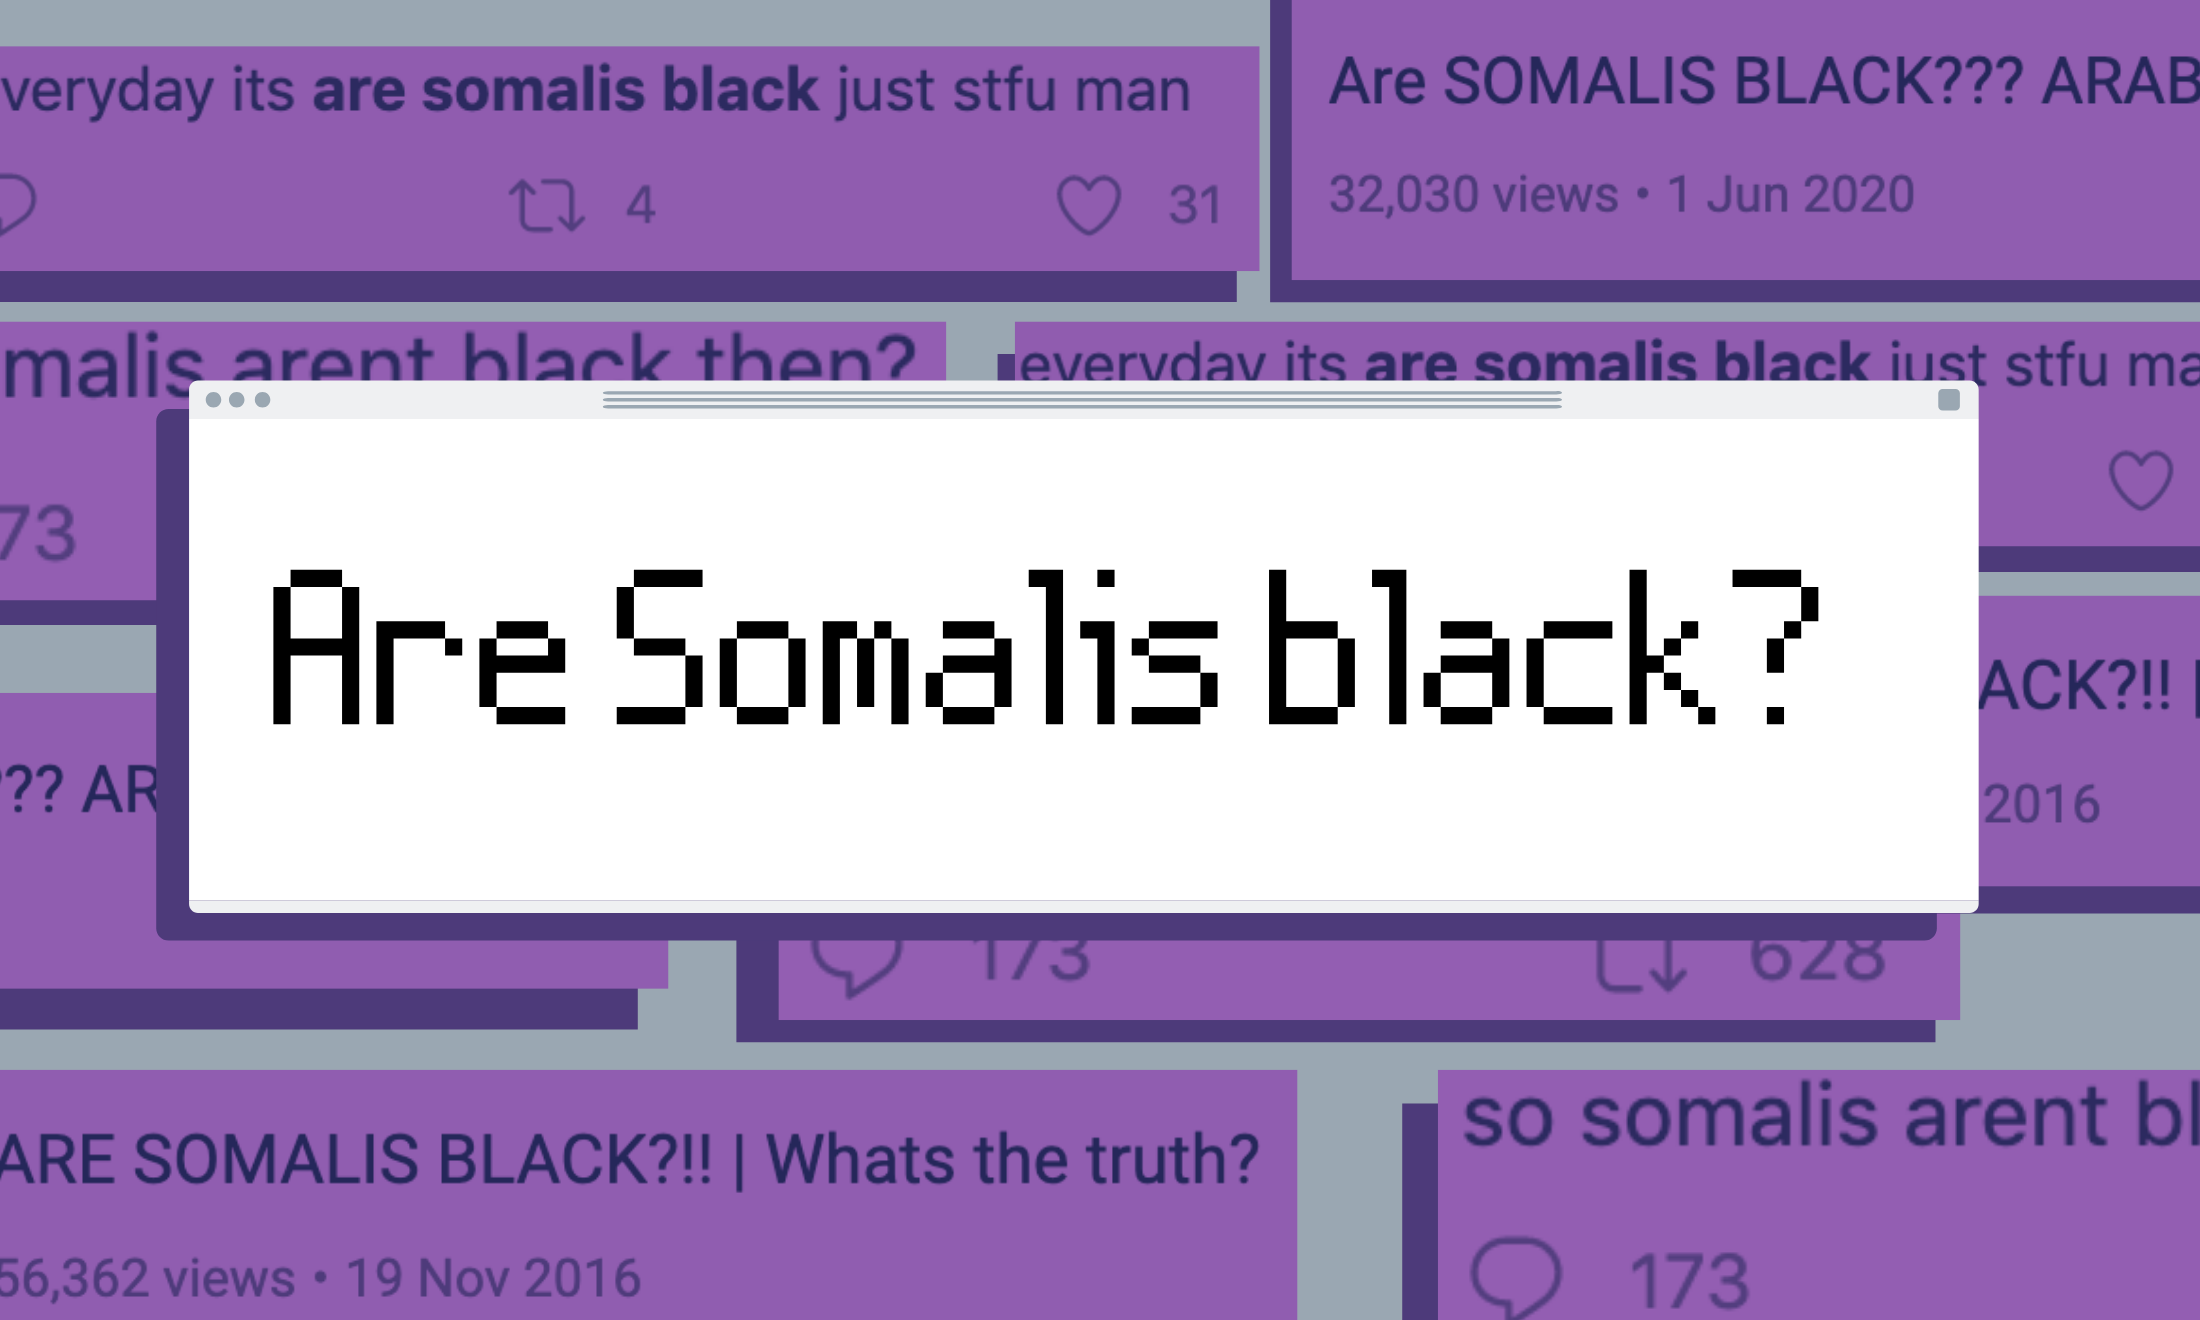 We need to unpack the damaging ‘Are Somalis black?’ rhetoric